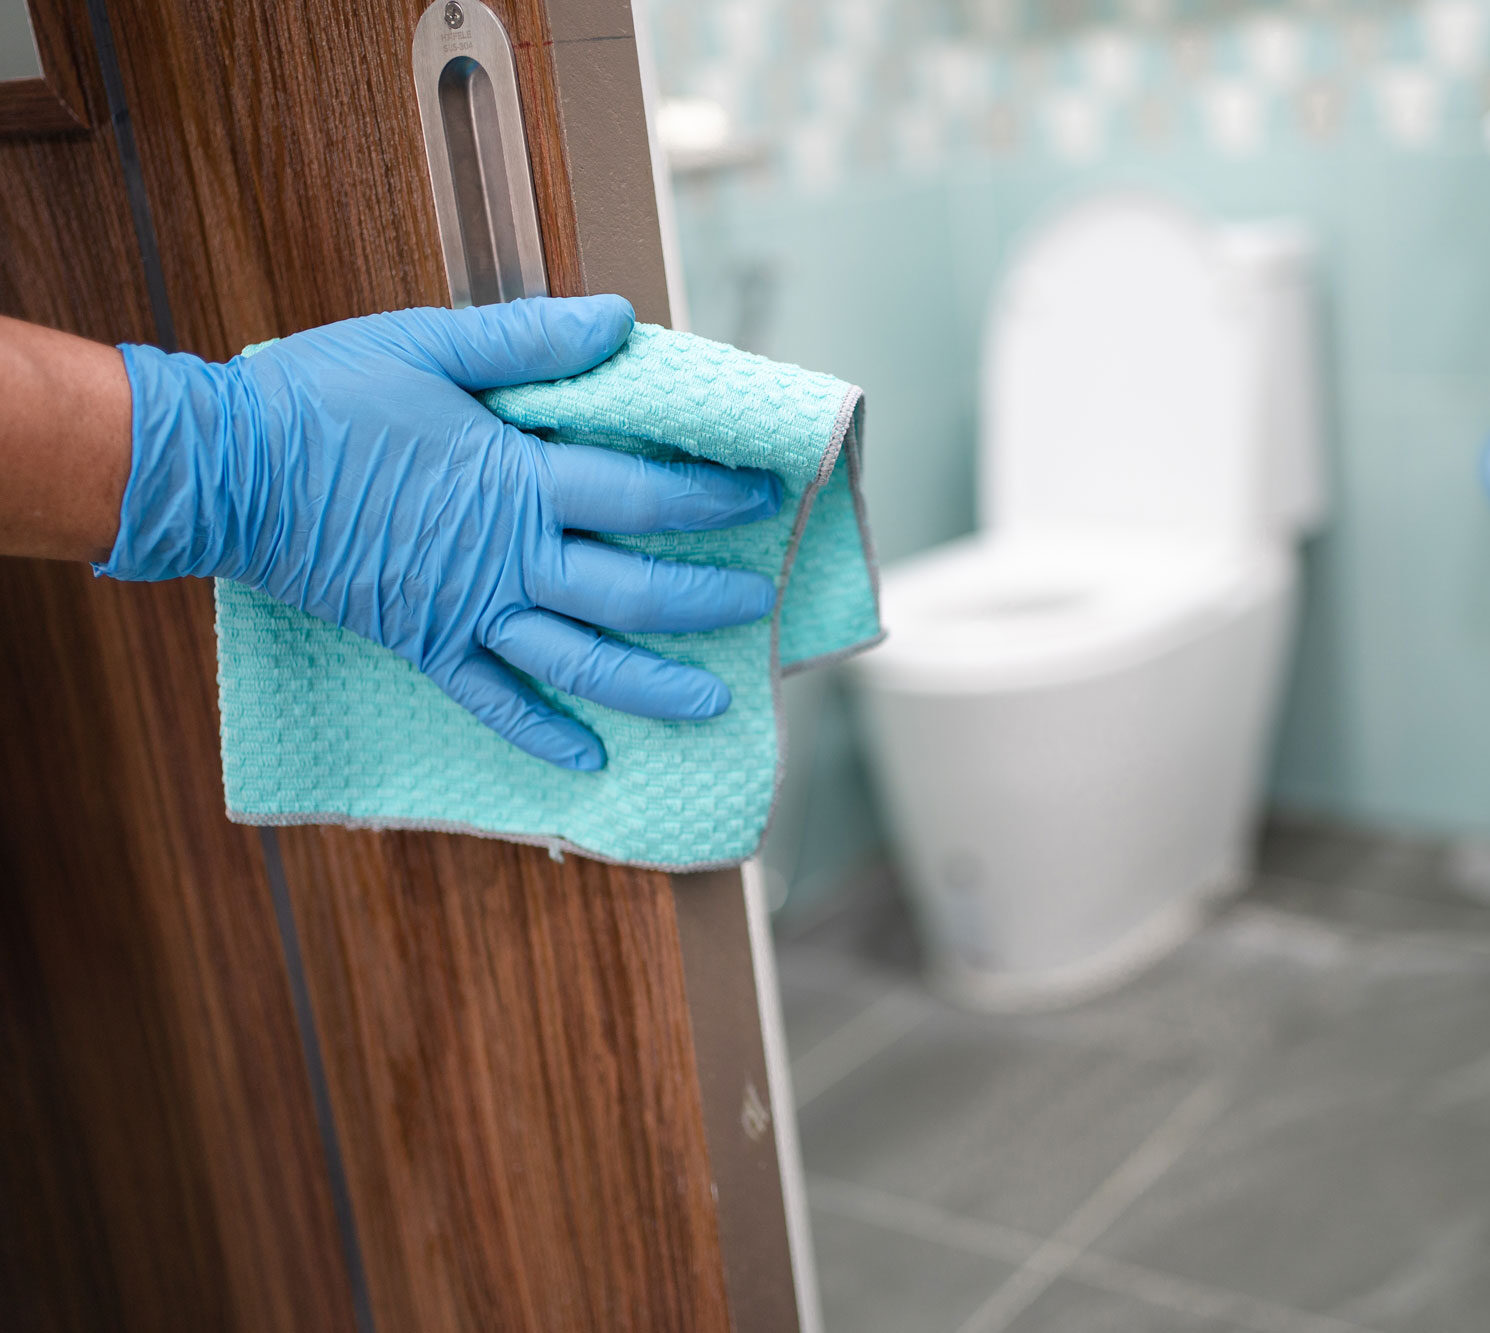 gloved hand wiping door handle of restroom